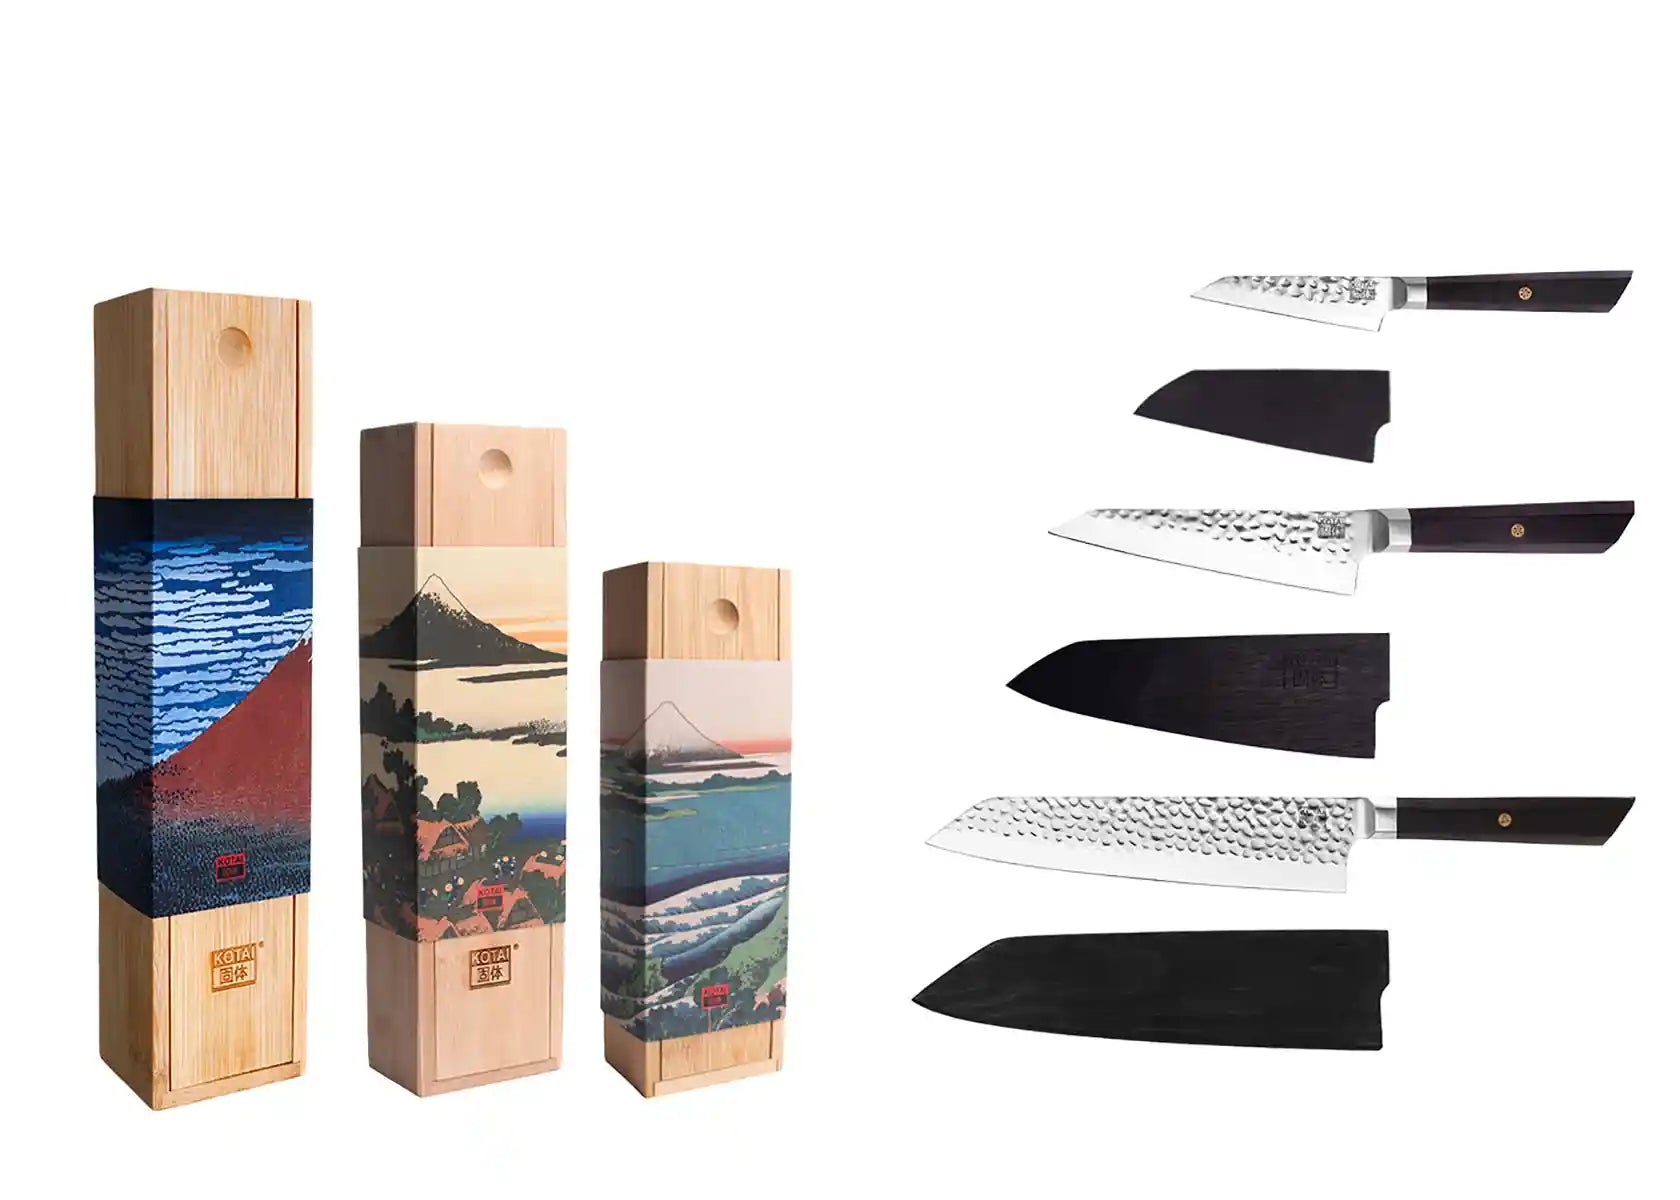 Le Set Asiatique de 3 couteaux : Couteau d'Office, Santoku, Hachoir - Kotai  Pas Cher